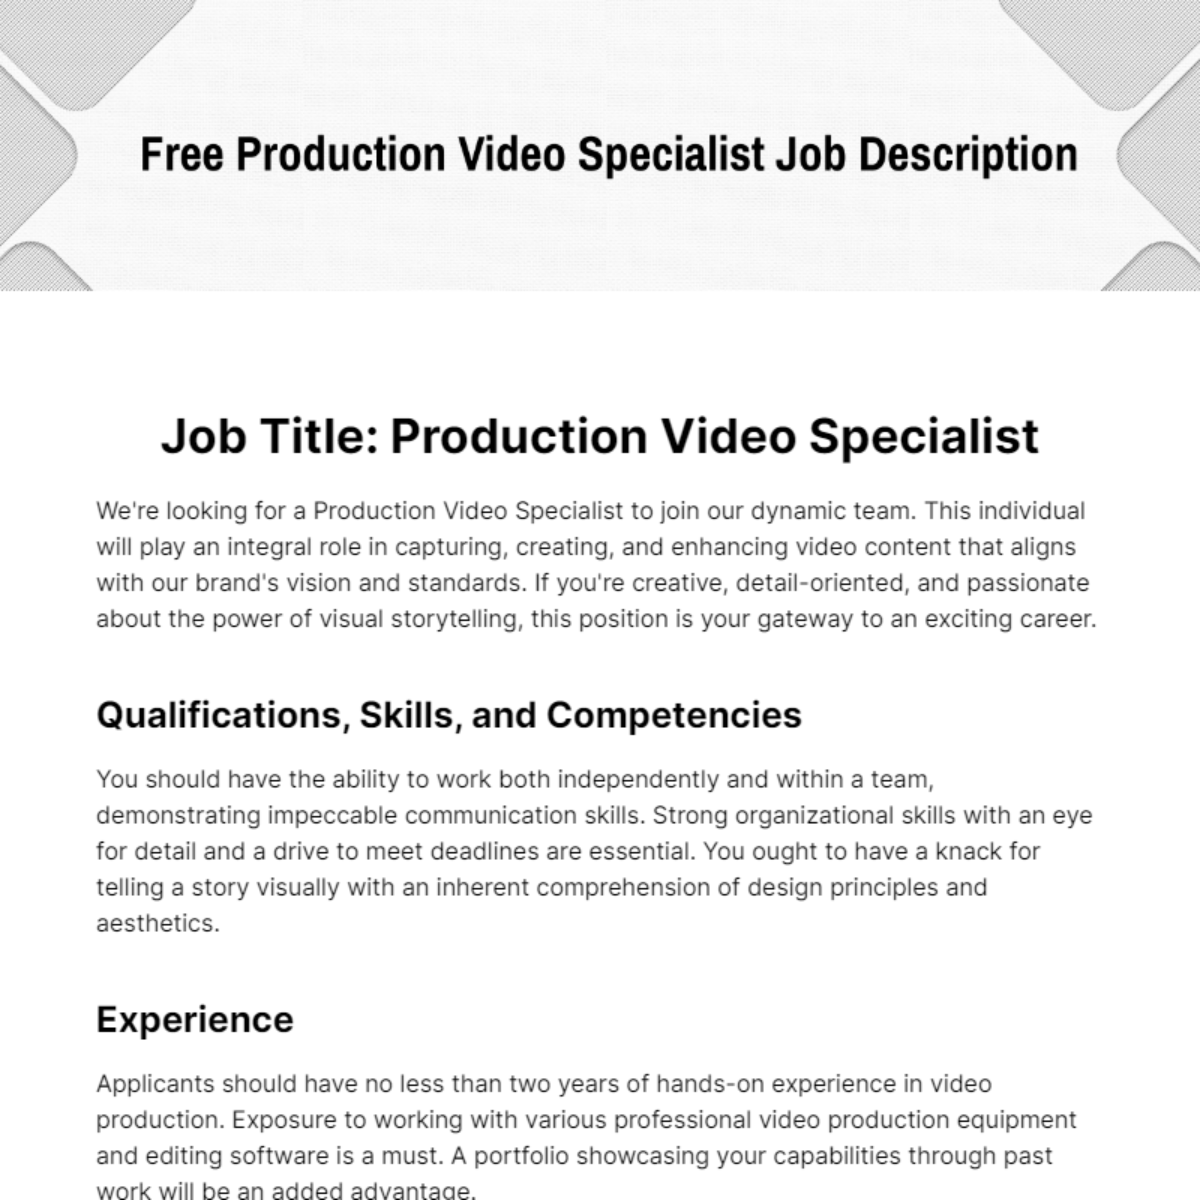 Free Production Video Specialist Job Description Template